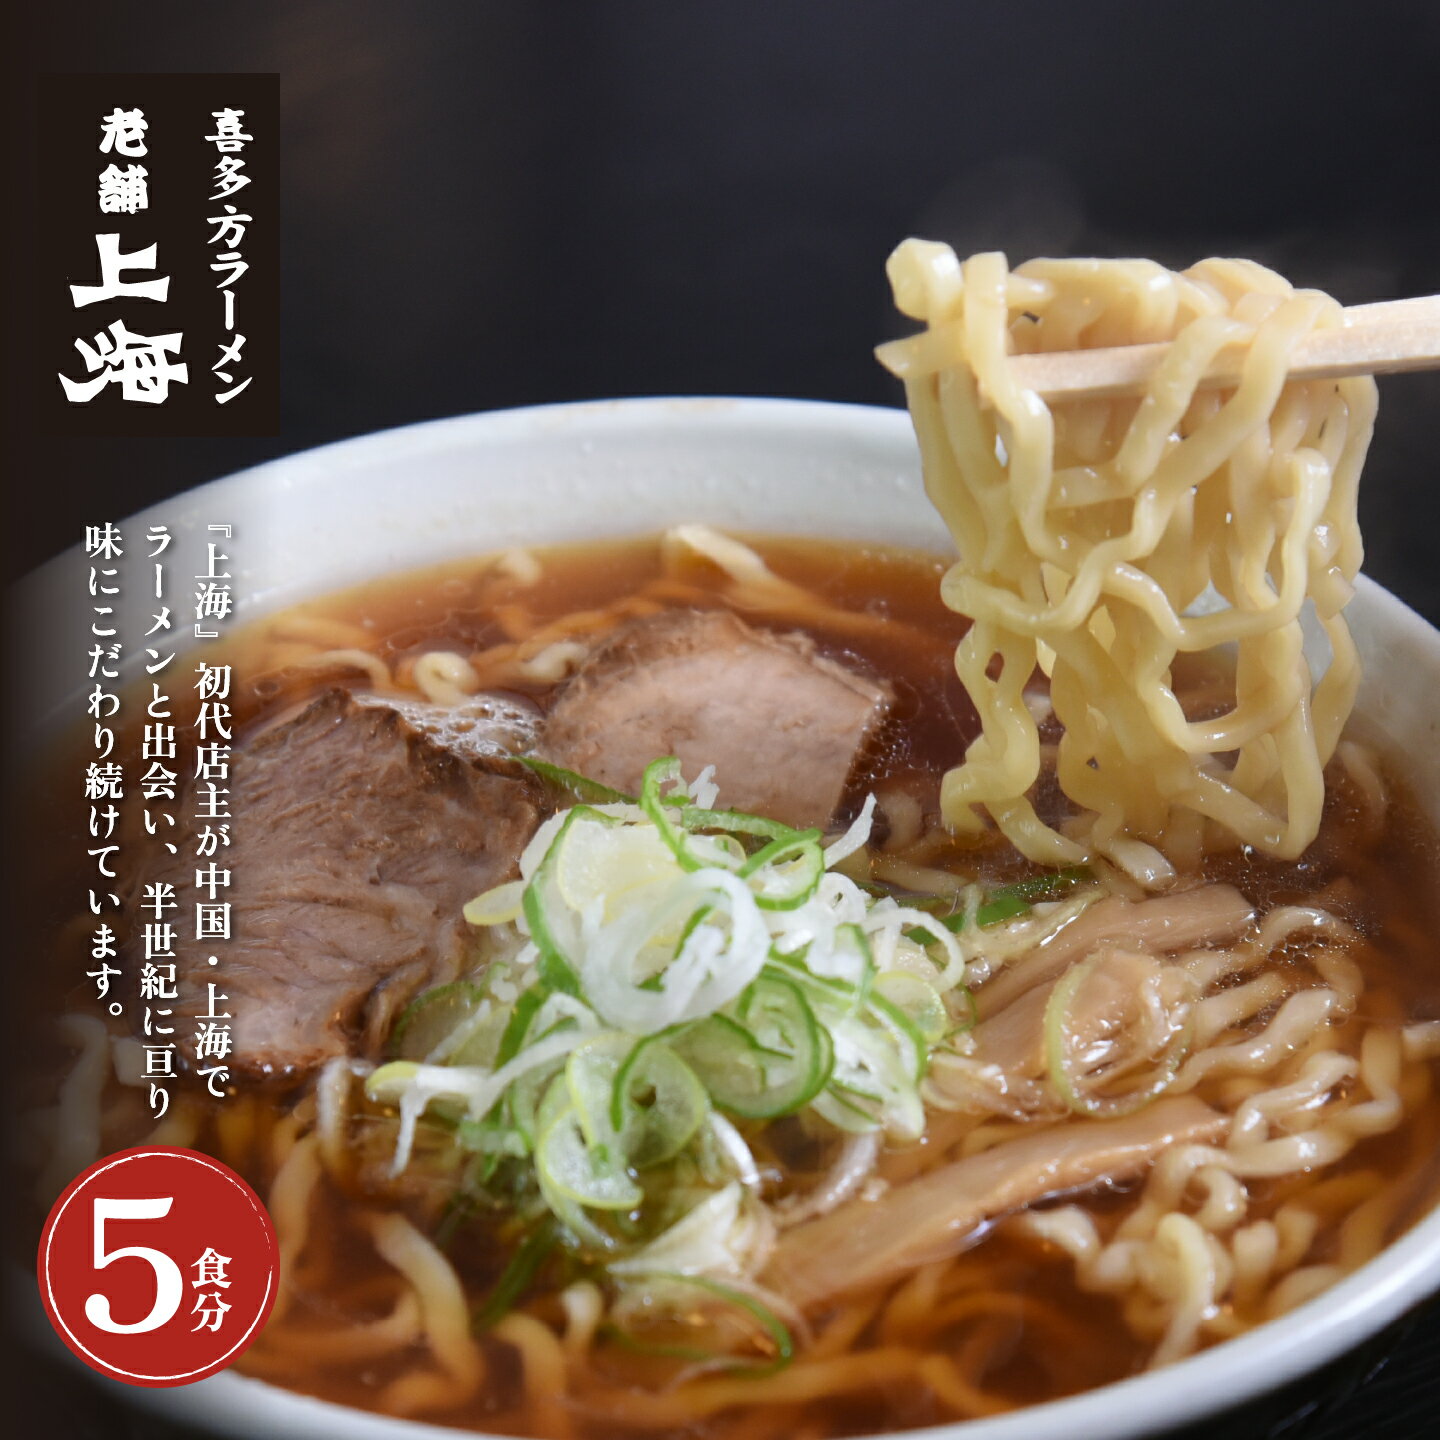 [年内発送]喜多方ラーメン ラーメン 生麺 5食 チャーシュー 醤油 ストレートスープ 上海 オリジナル